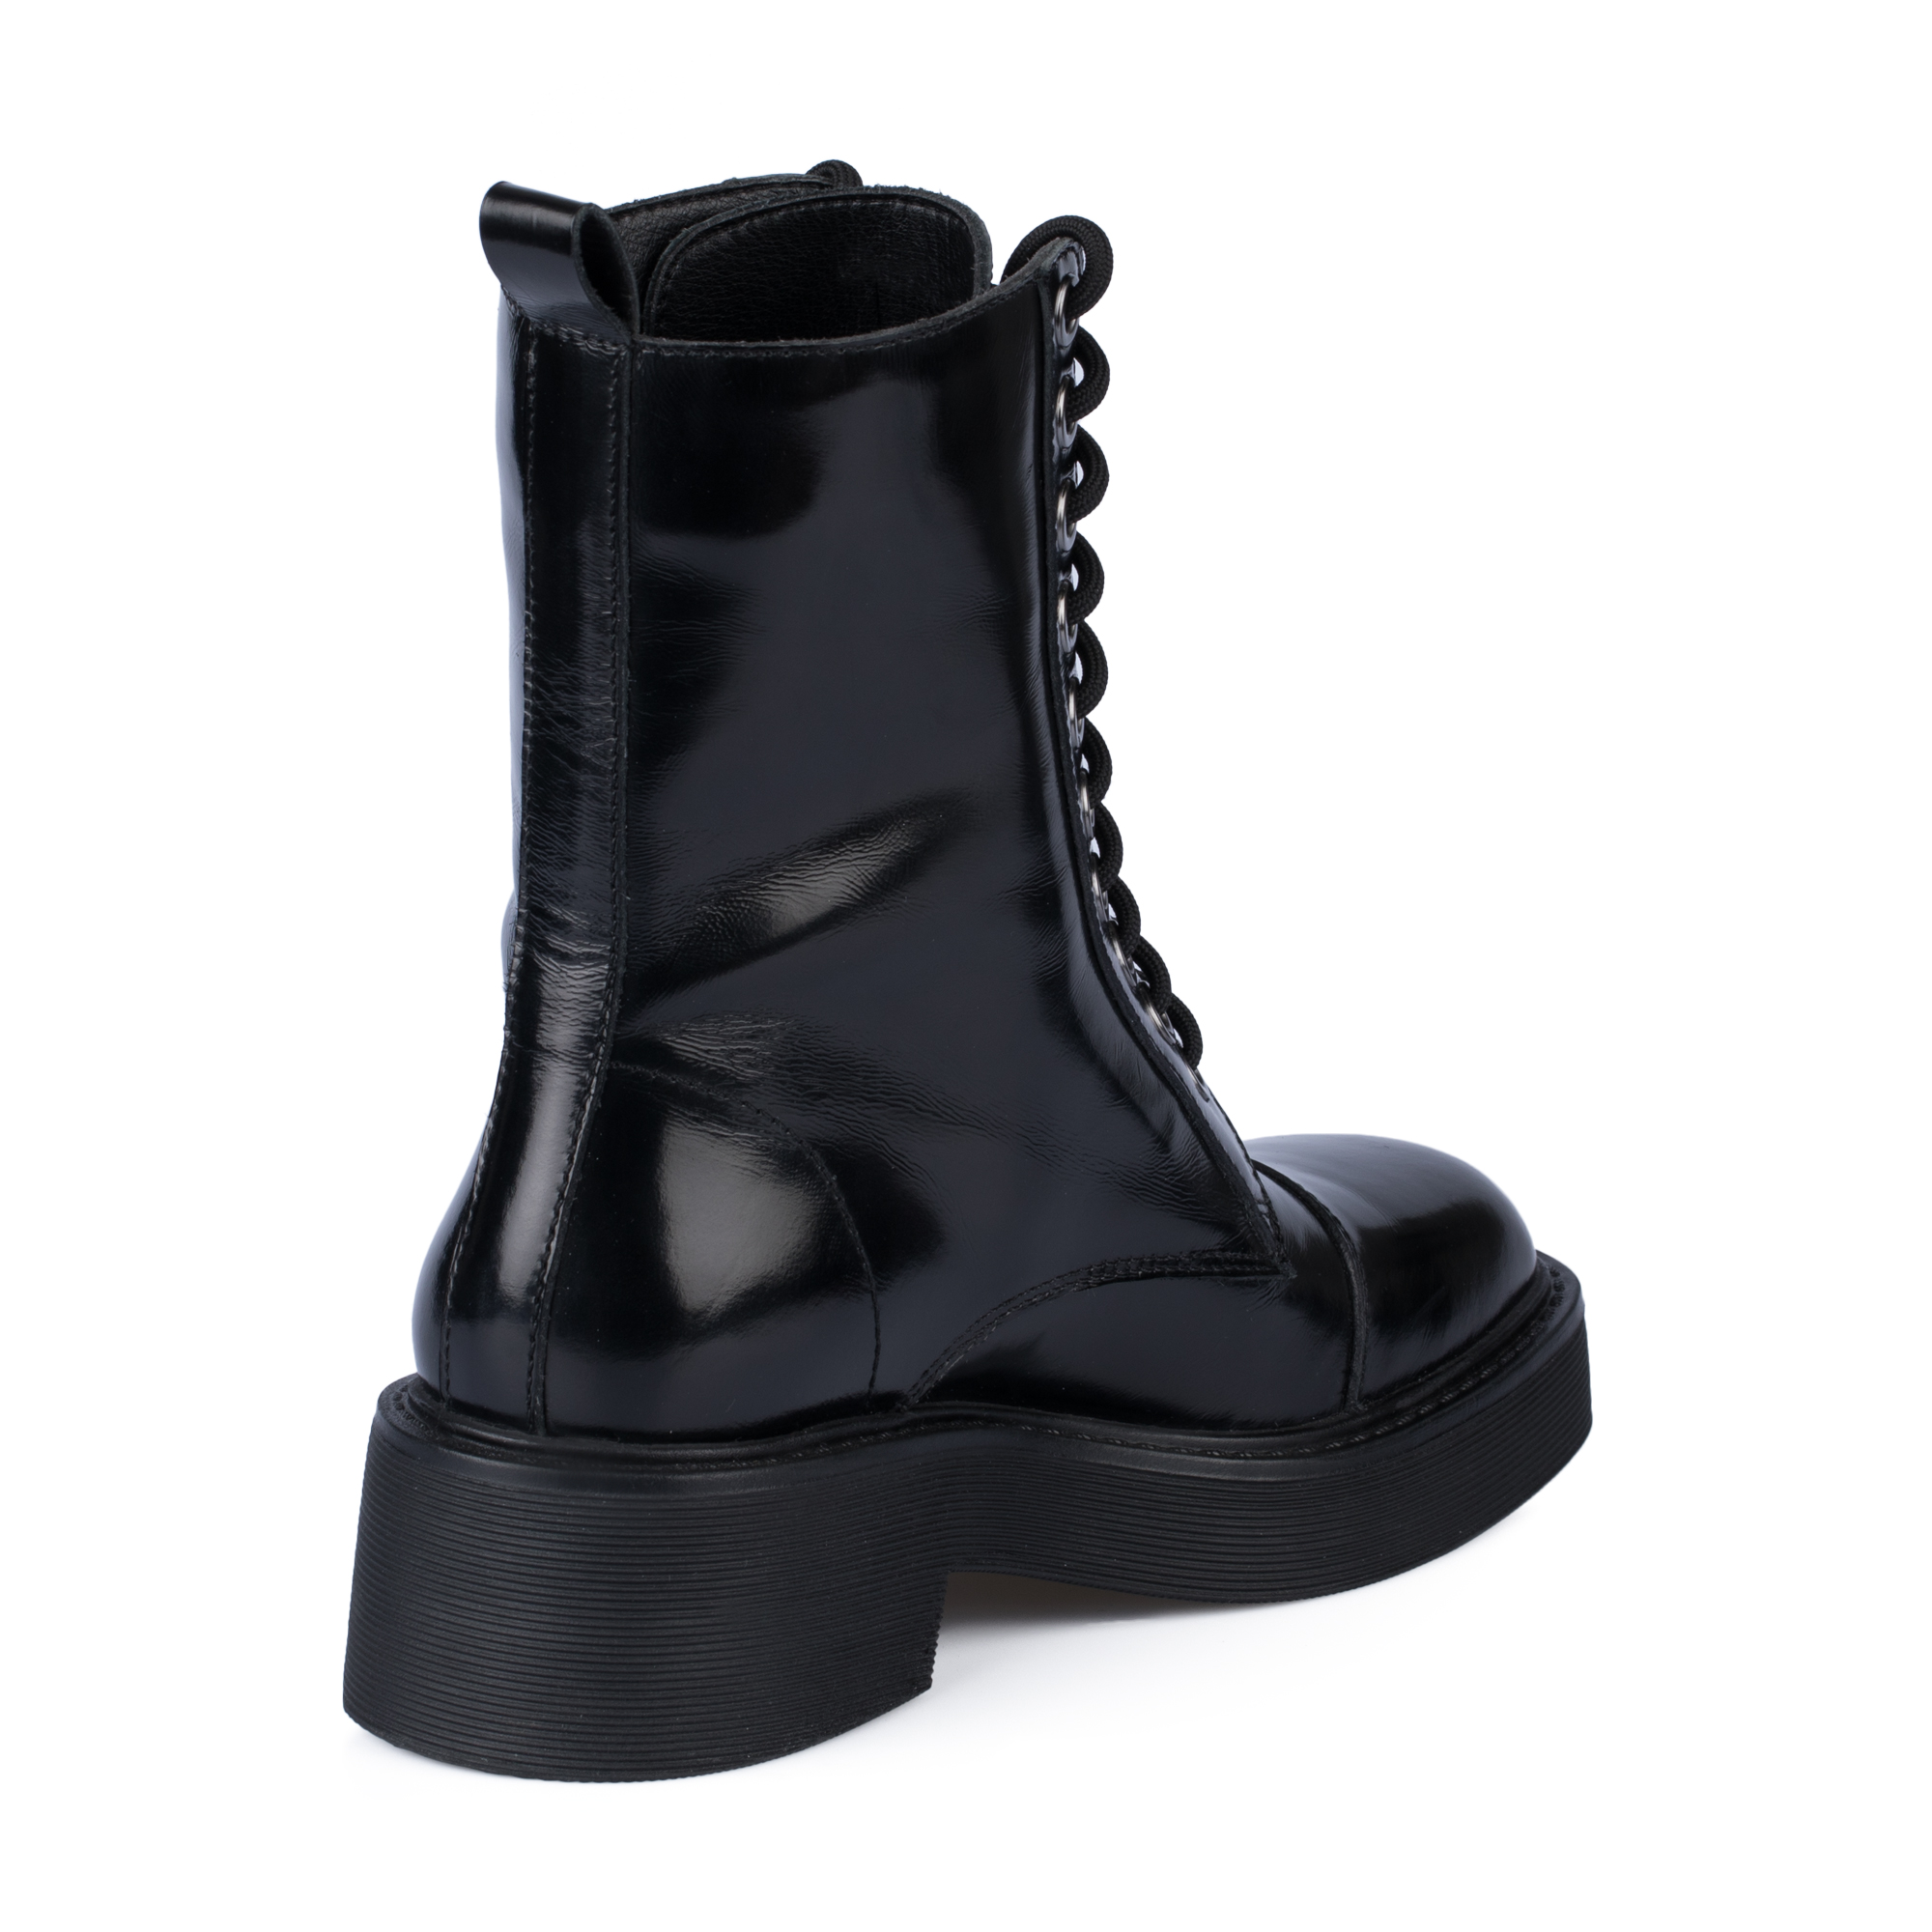 Ботинки Thomas Munz 126-400A-2102, цвет черный, размер 40 - фото 3